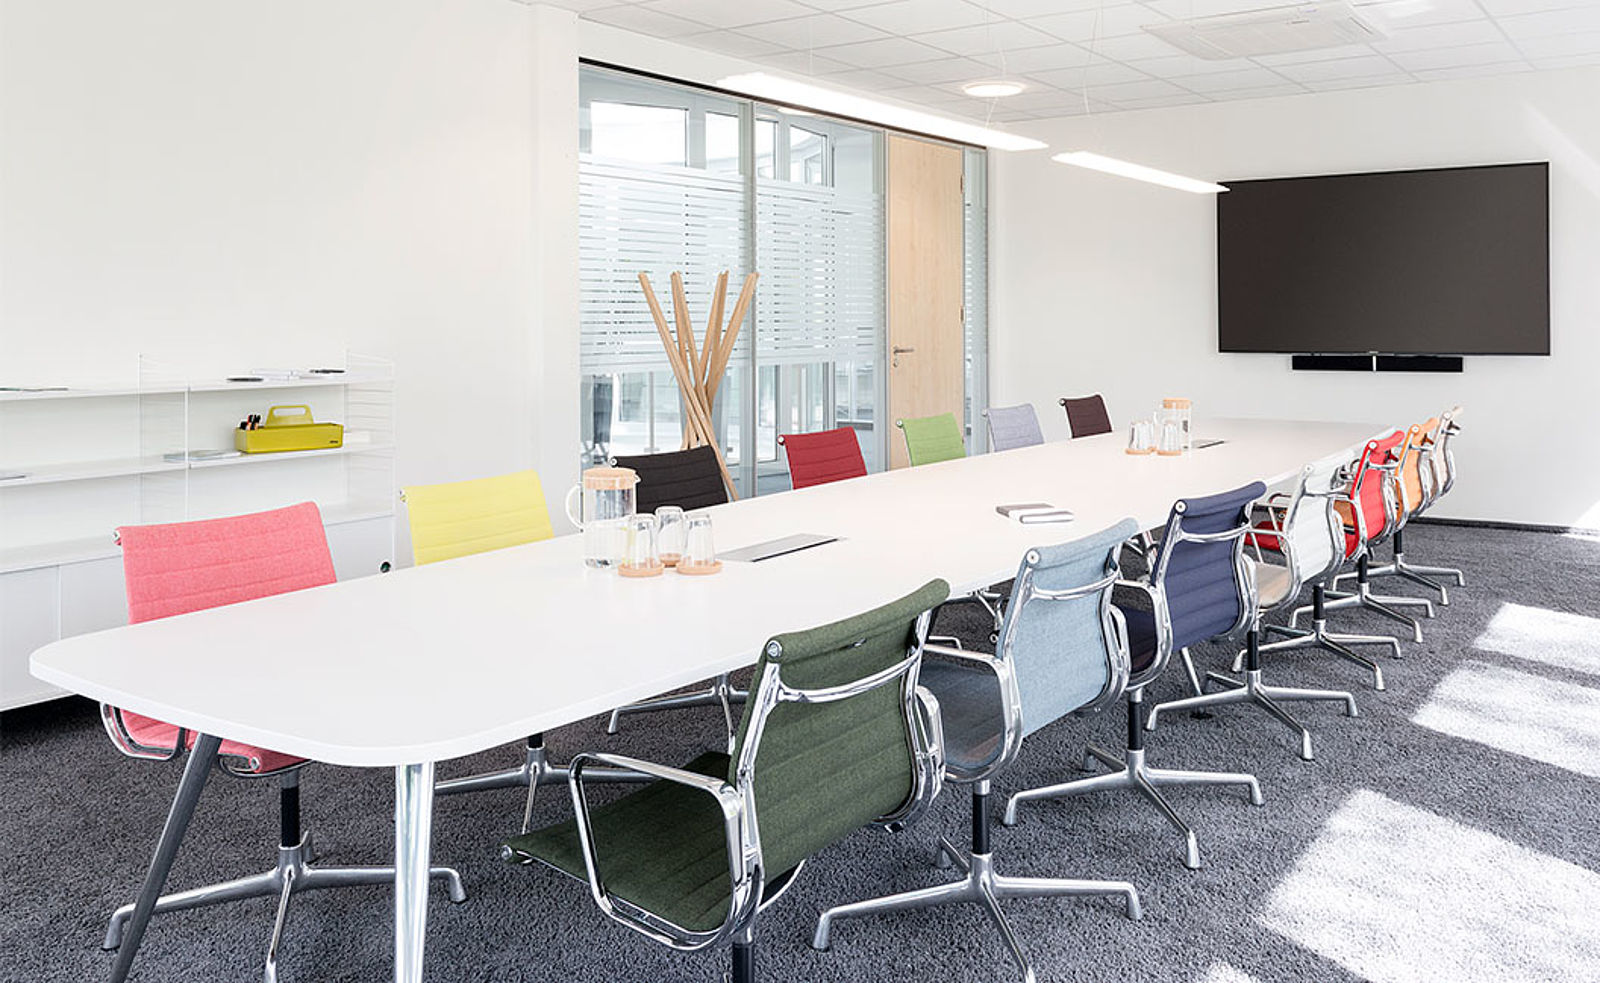 Konferenzraum mit Vitra Konferenztisch und Eames Stühlen in verschiedenen Farben mit POPO Büroplanung